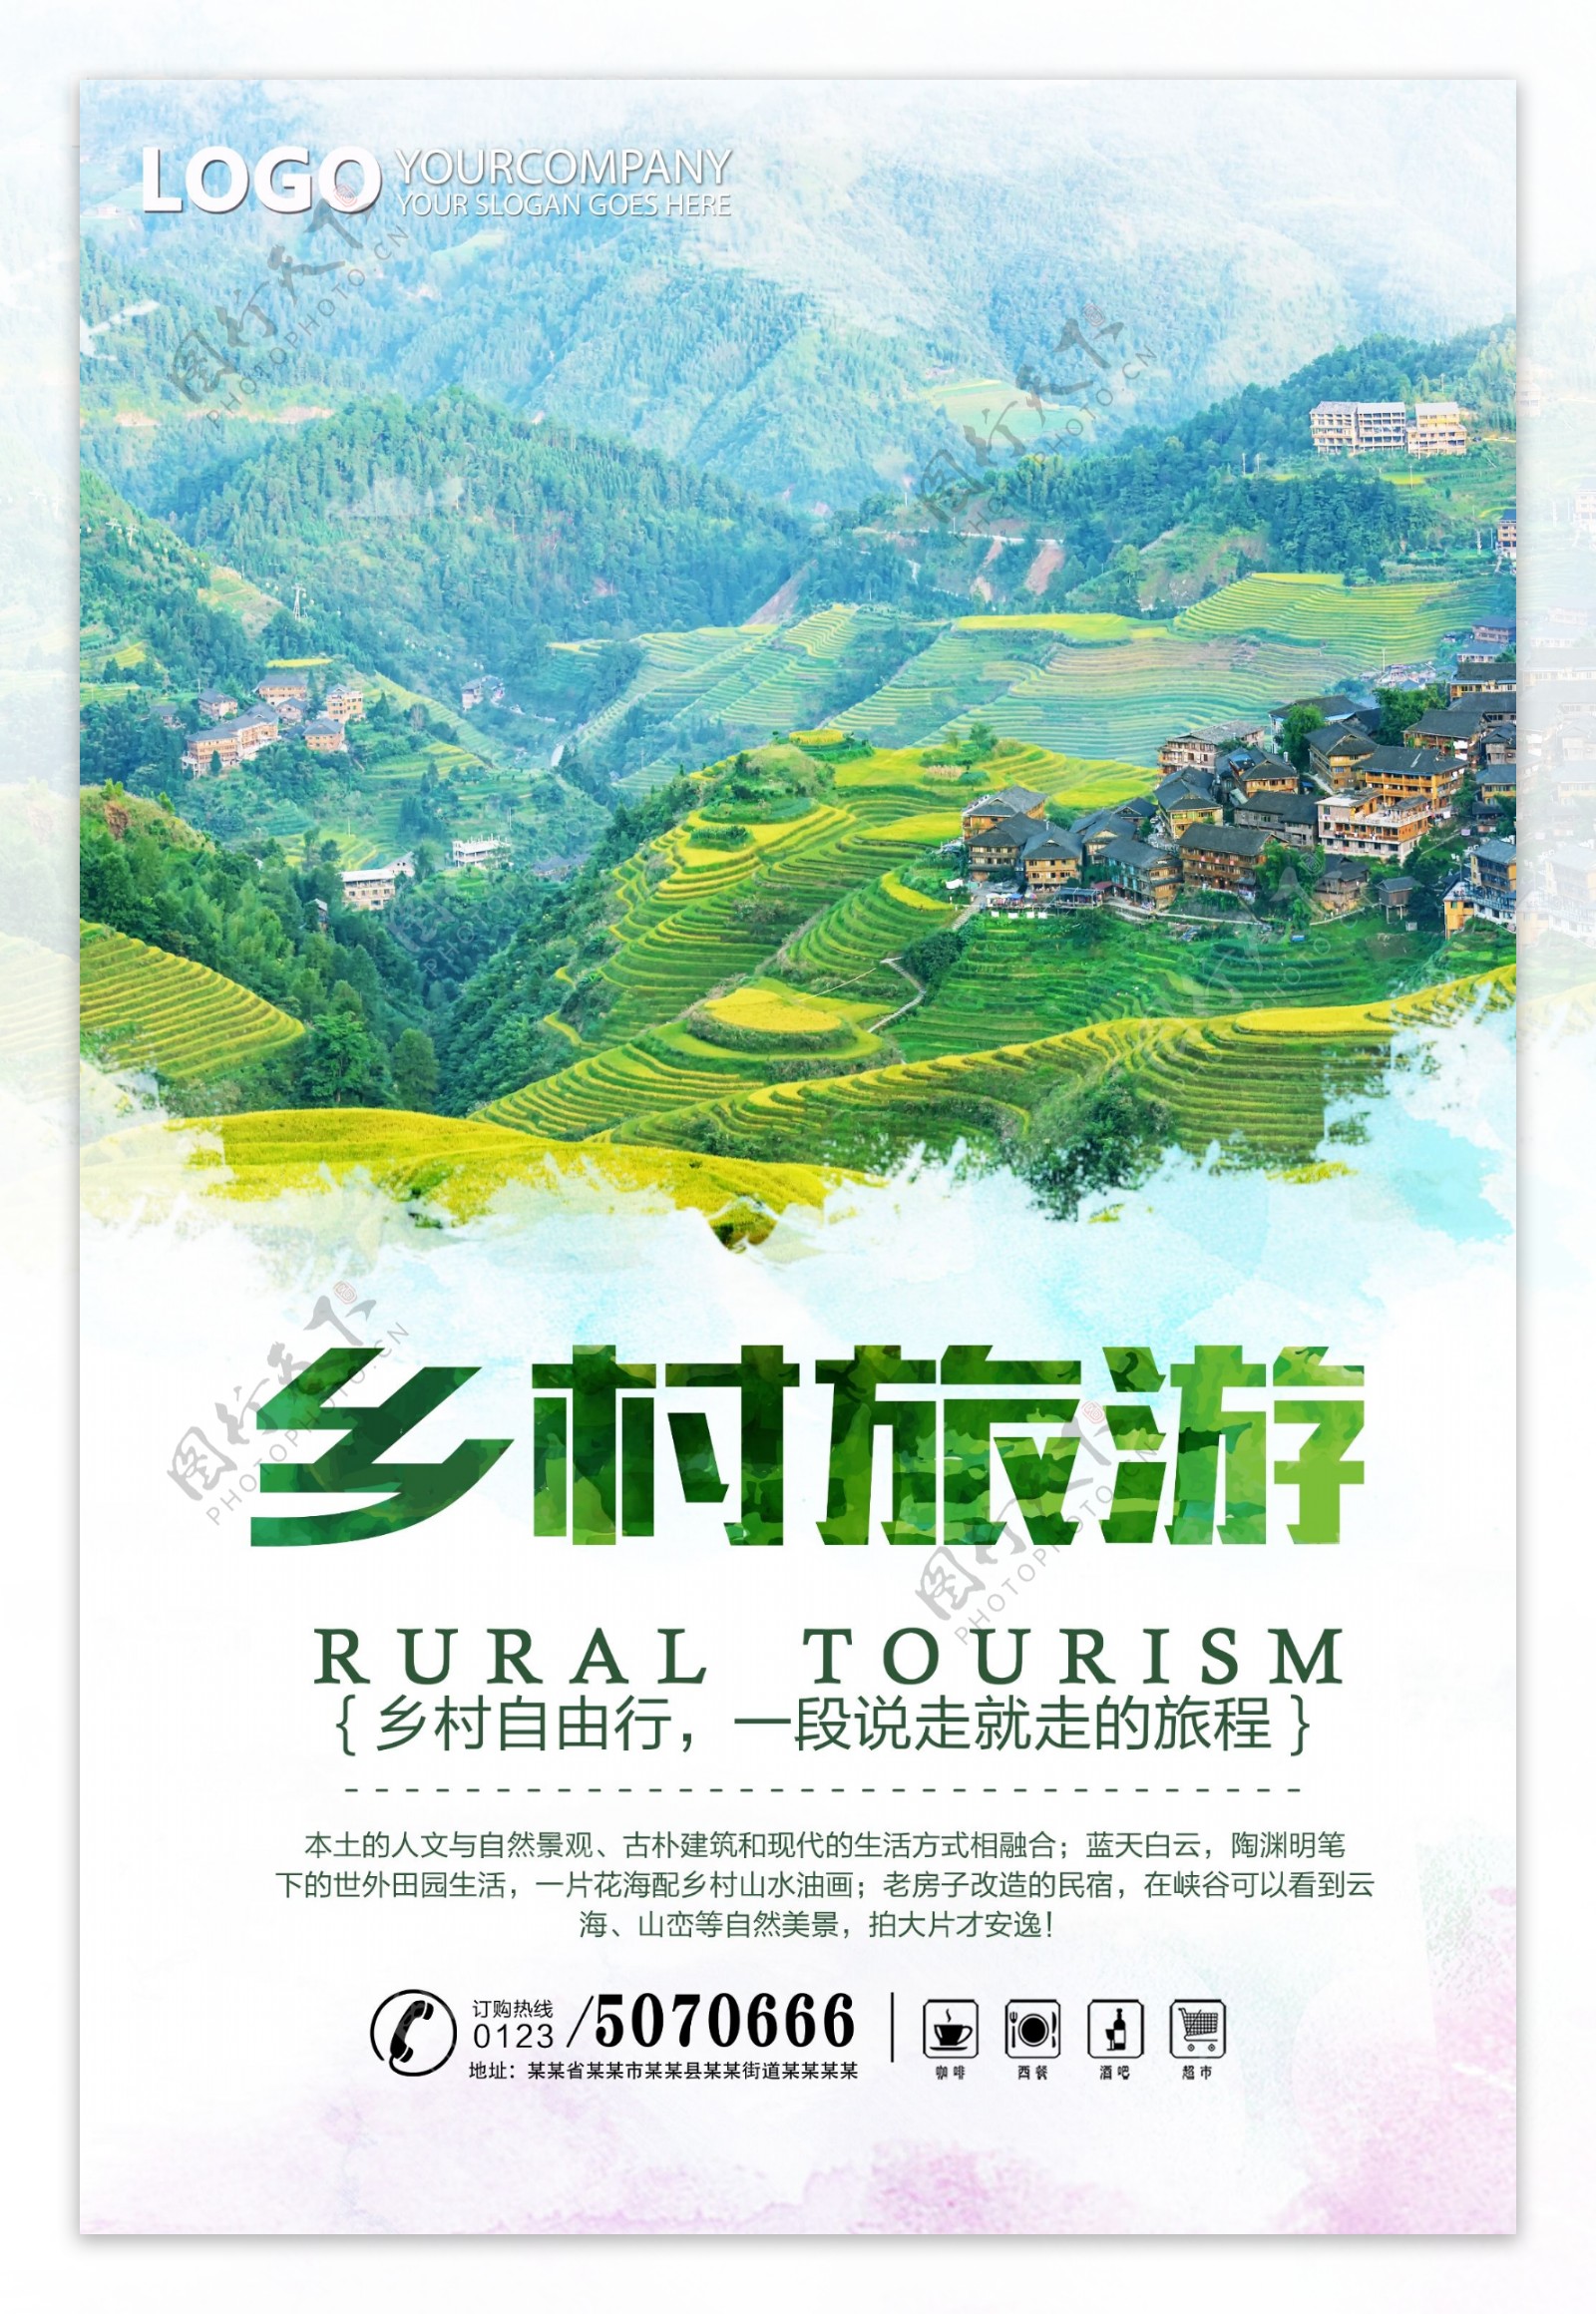 绿色清新最美乡村旅游海报设计